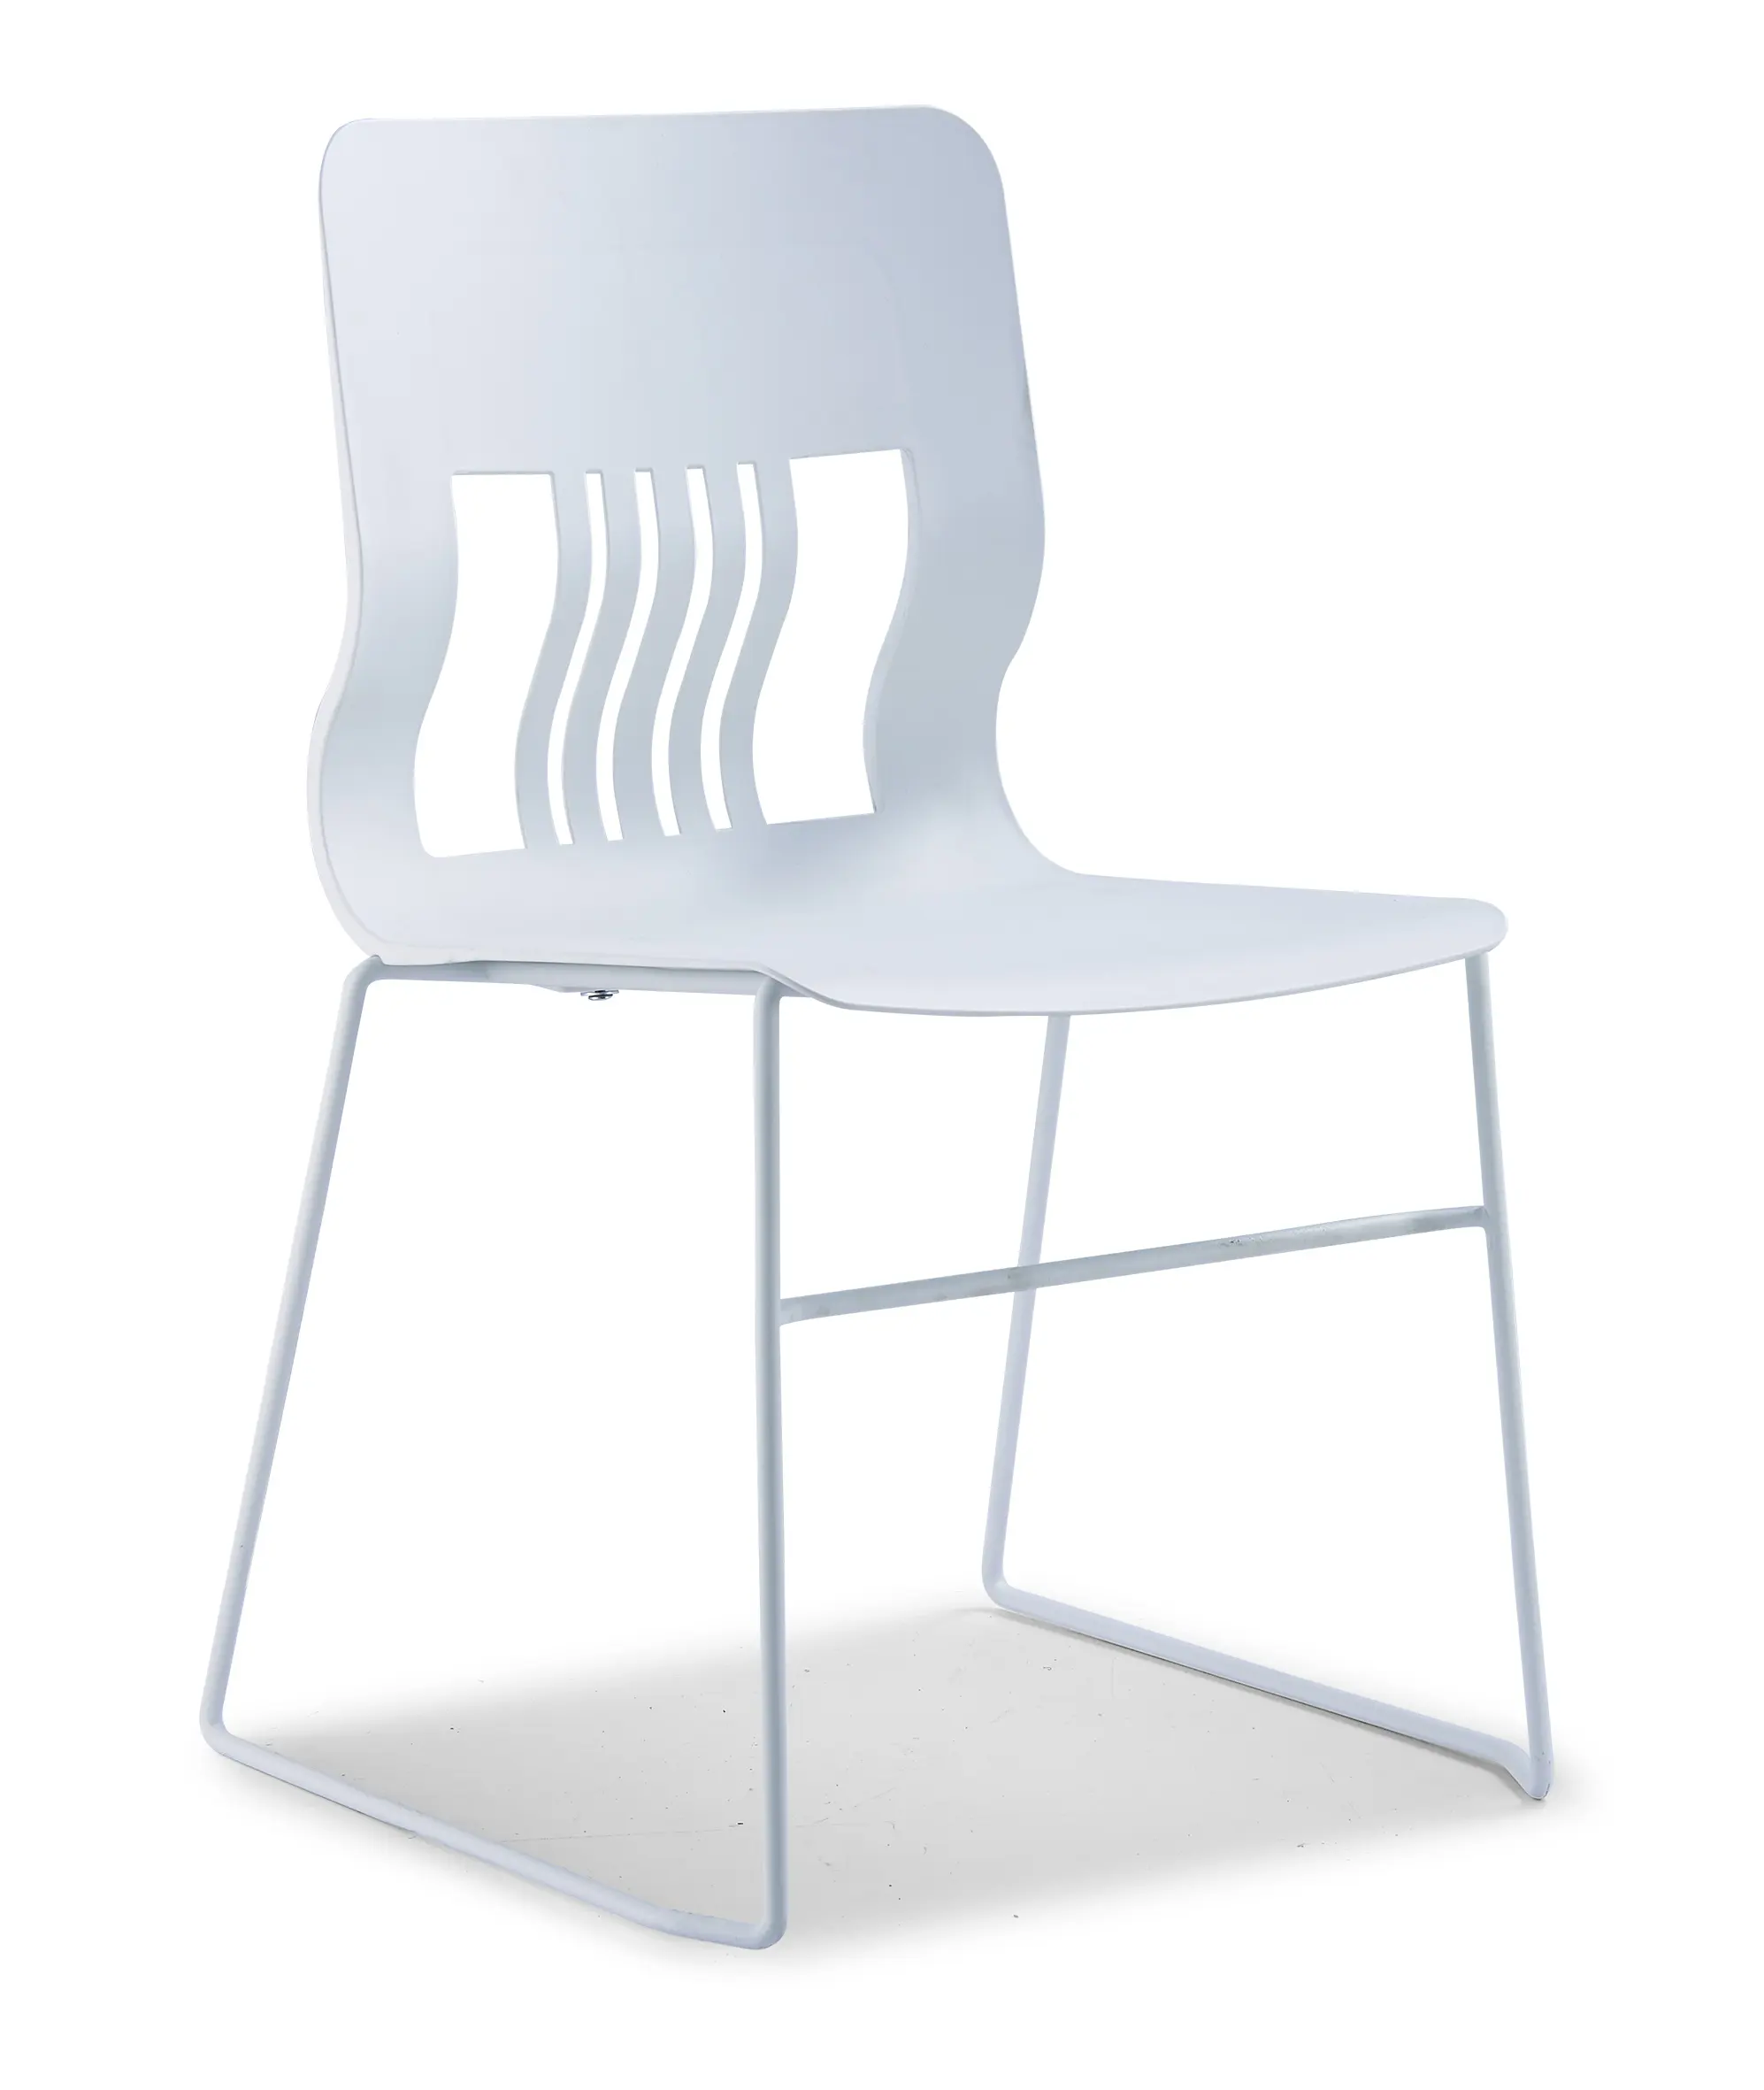 تصميم بسيط الحديثة الأعمال اجتماع كرسي مكتب مع قدم الصلب مؤتمر كرسي كرسي قابل للطي